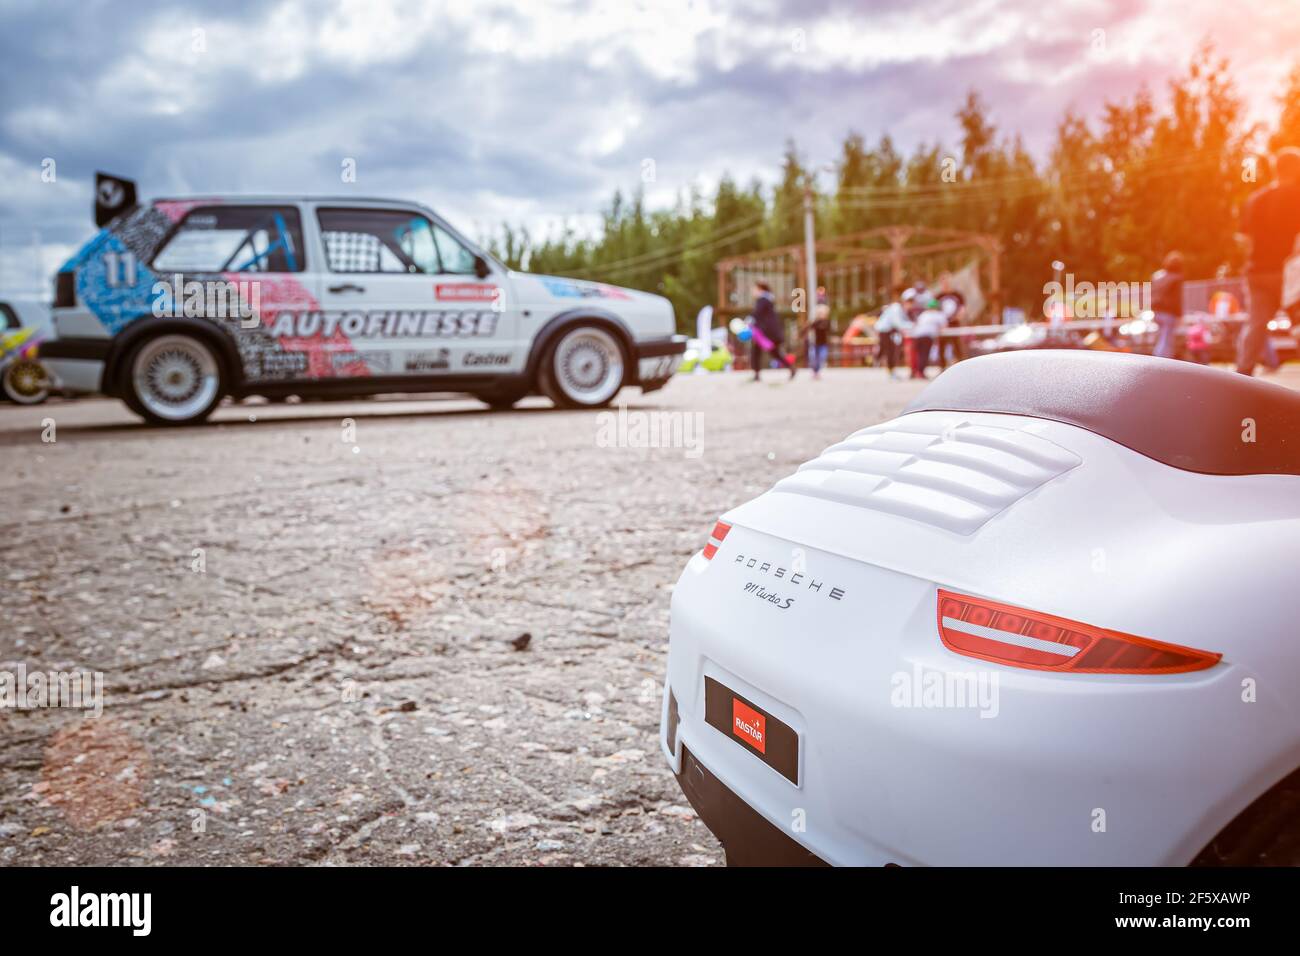 Moscou, Russie - 06 juillet 2019: Voiture-jouet Porsche 911 Carrera Turbo S dans le parking avec de vraies voitures. L'arrière de la voiture, sur le fond d'un Volkswagen Golf 2 réglé Banque D'Images